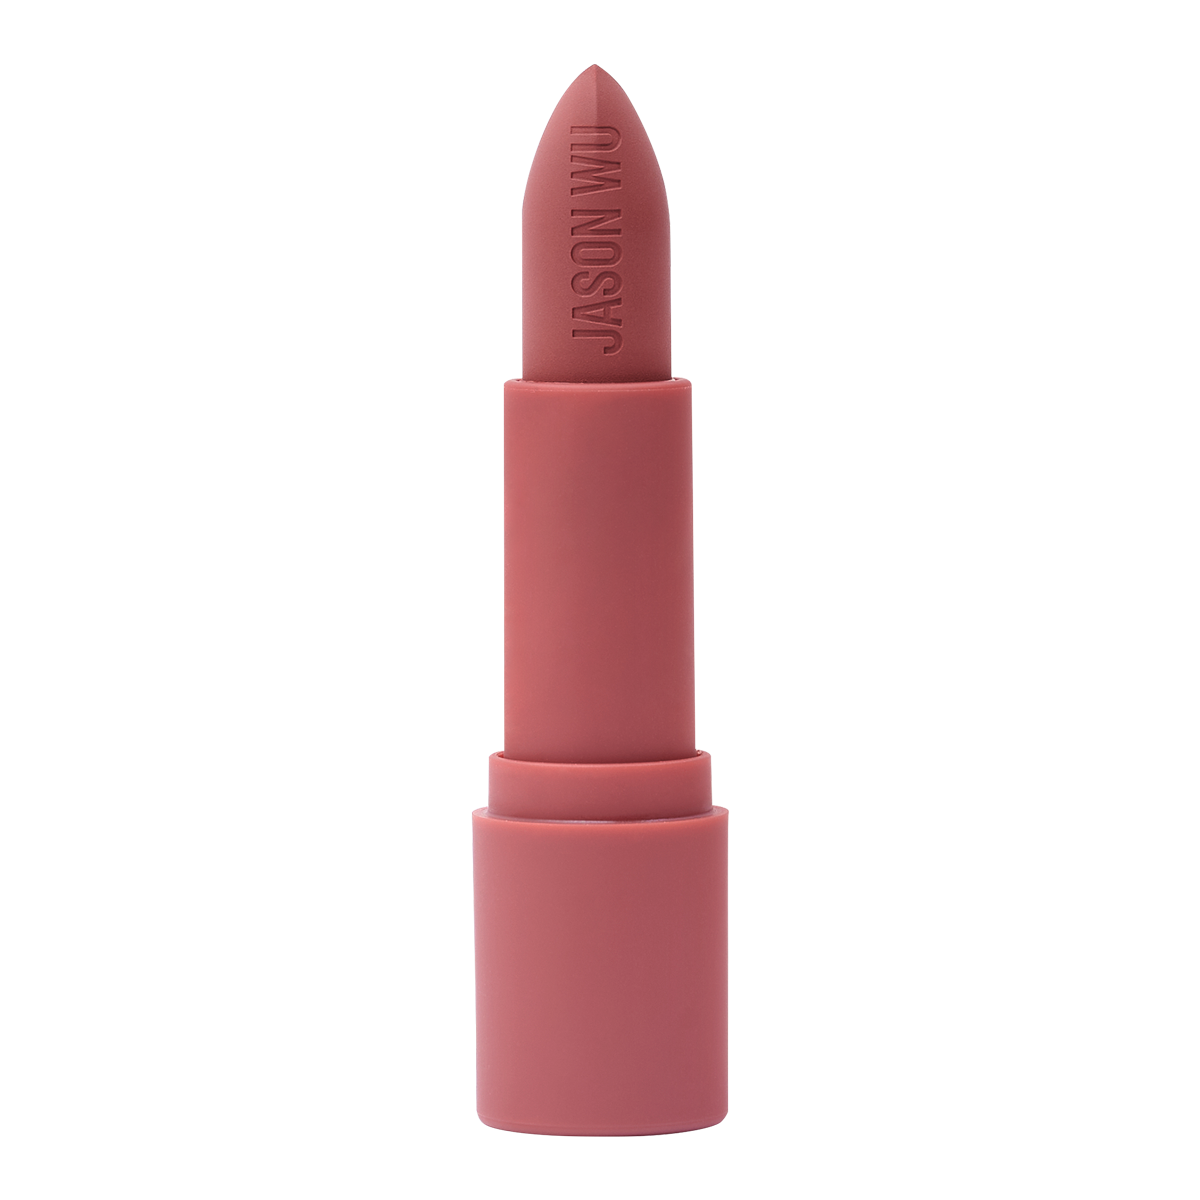 Hot Fluff Souffle Velvet Matte Lipstick 100 Clean – Jason Wu Beauty